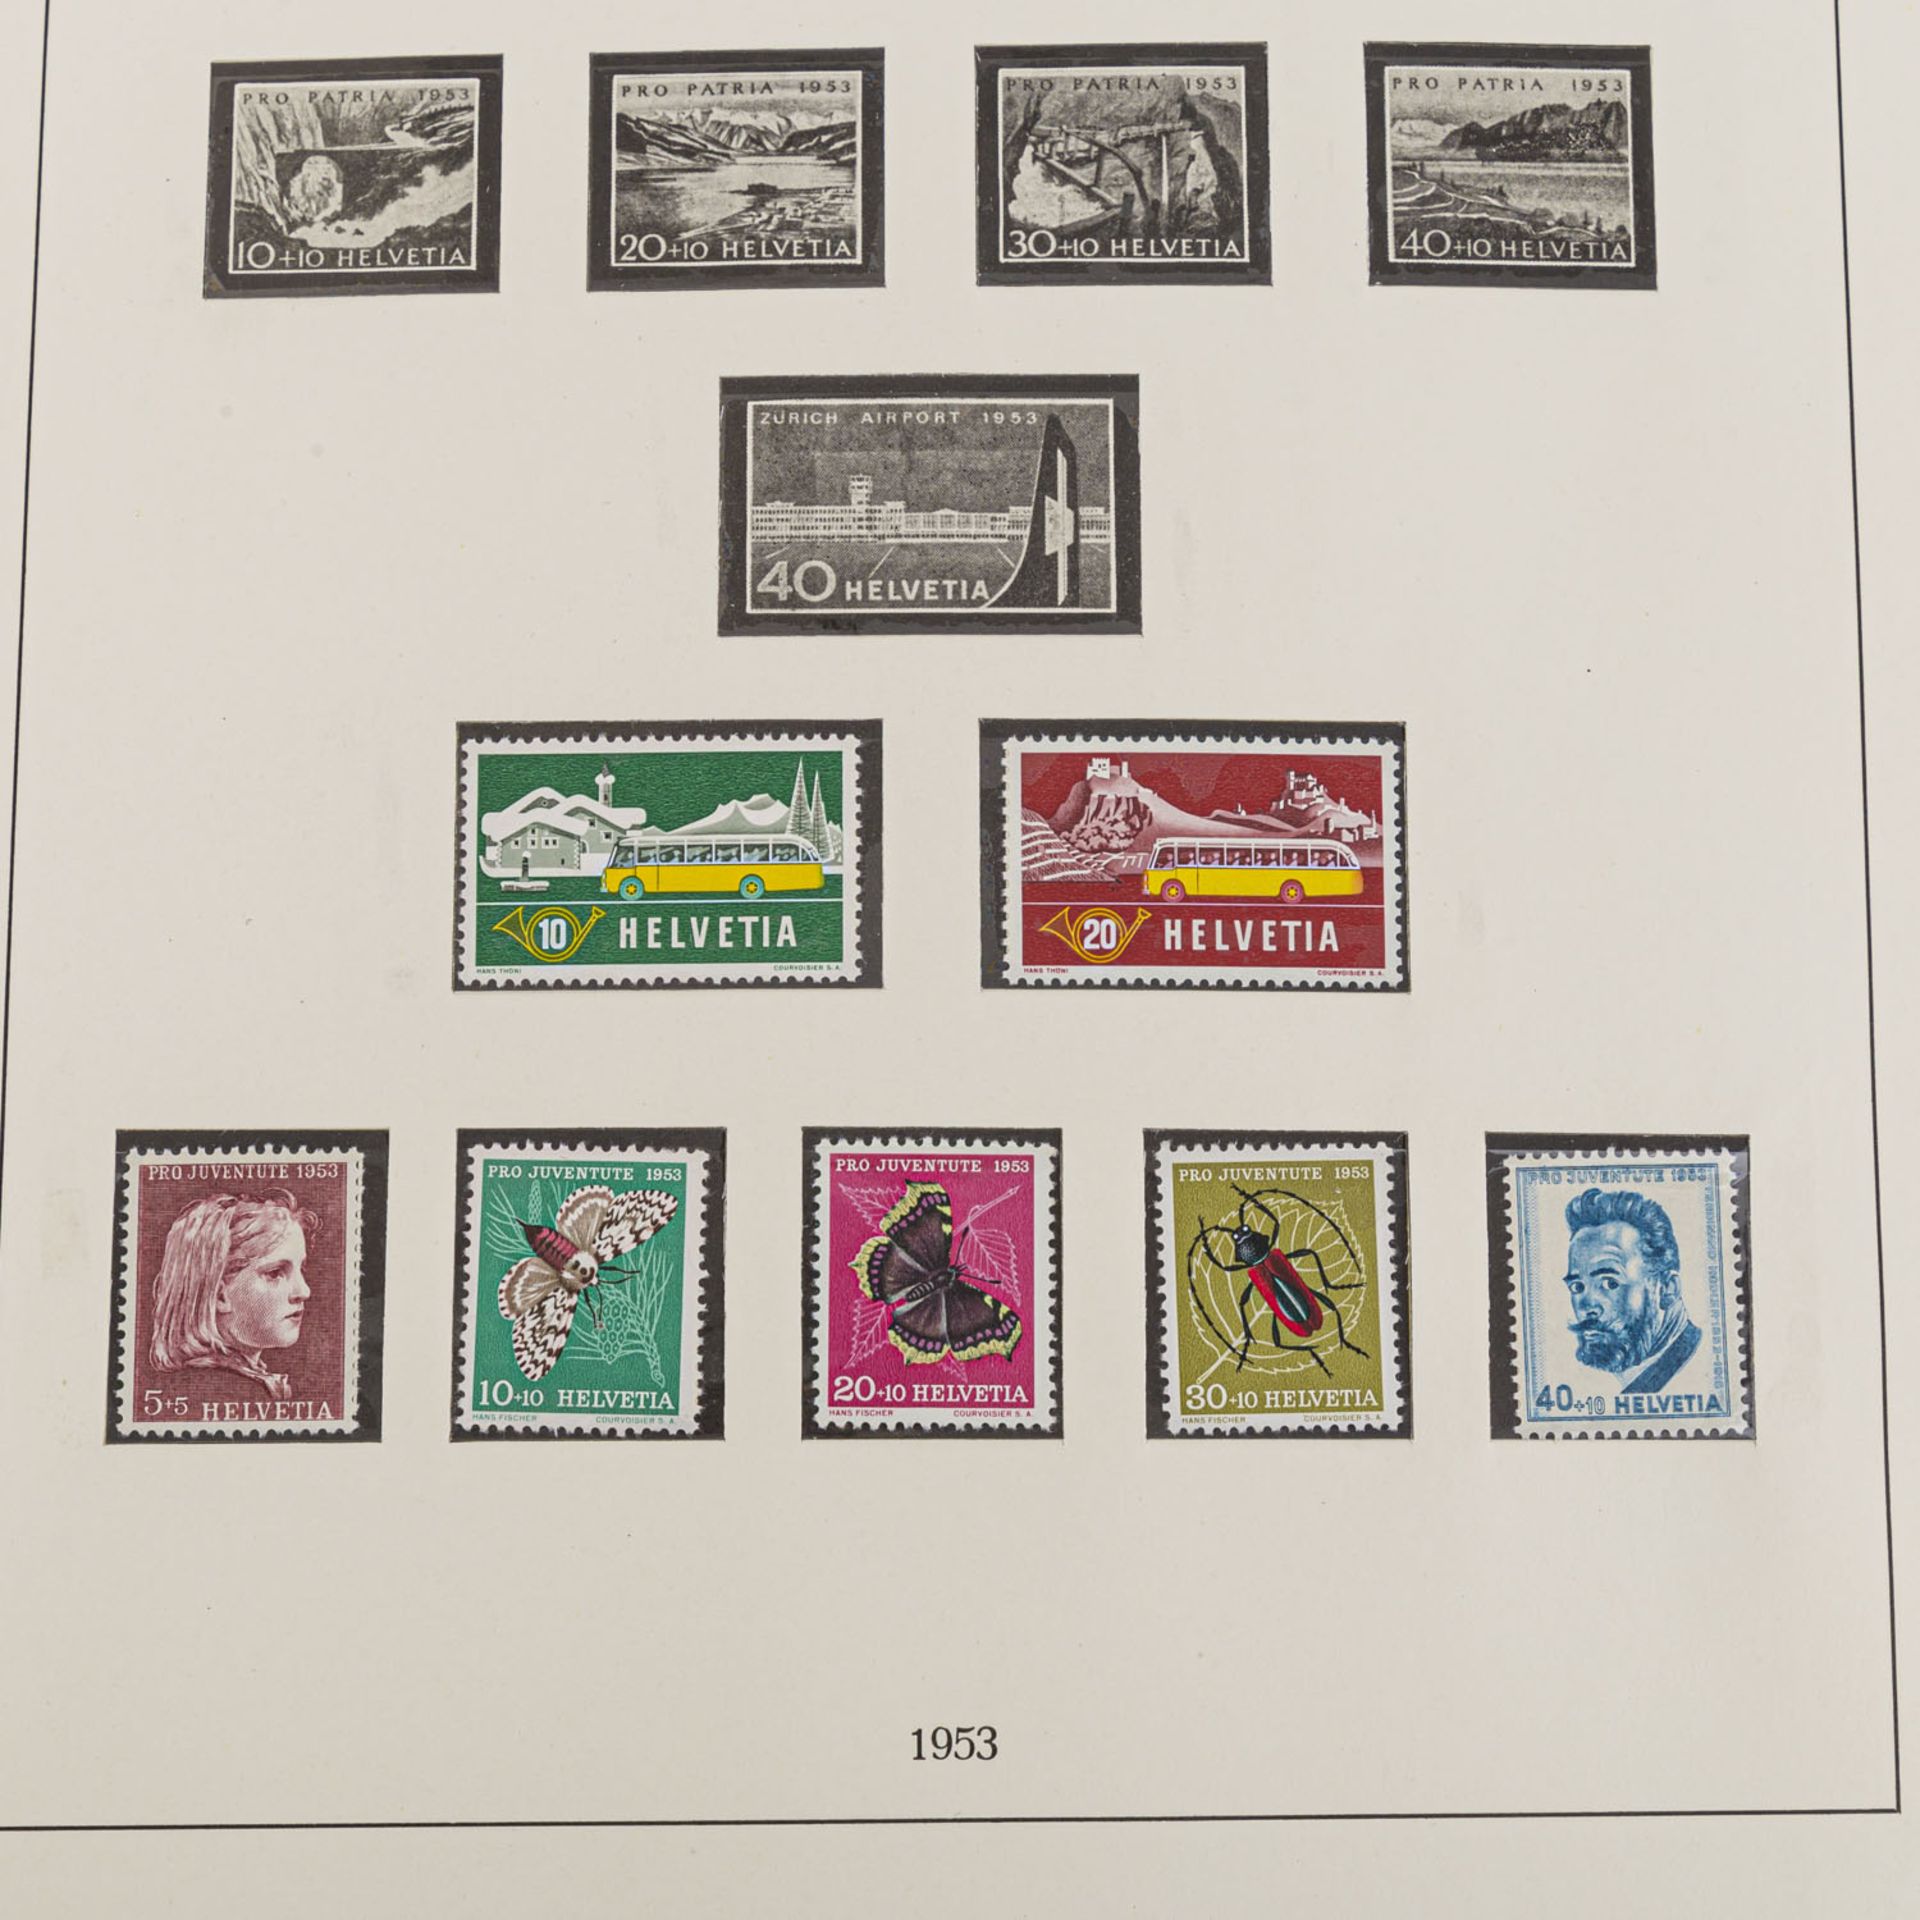 Schweiz - Marken zu 450 Schweizer FrankenFrankaturwert, noch in originalen Umschlägen, die - Bild 8 aus 8